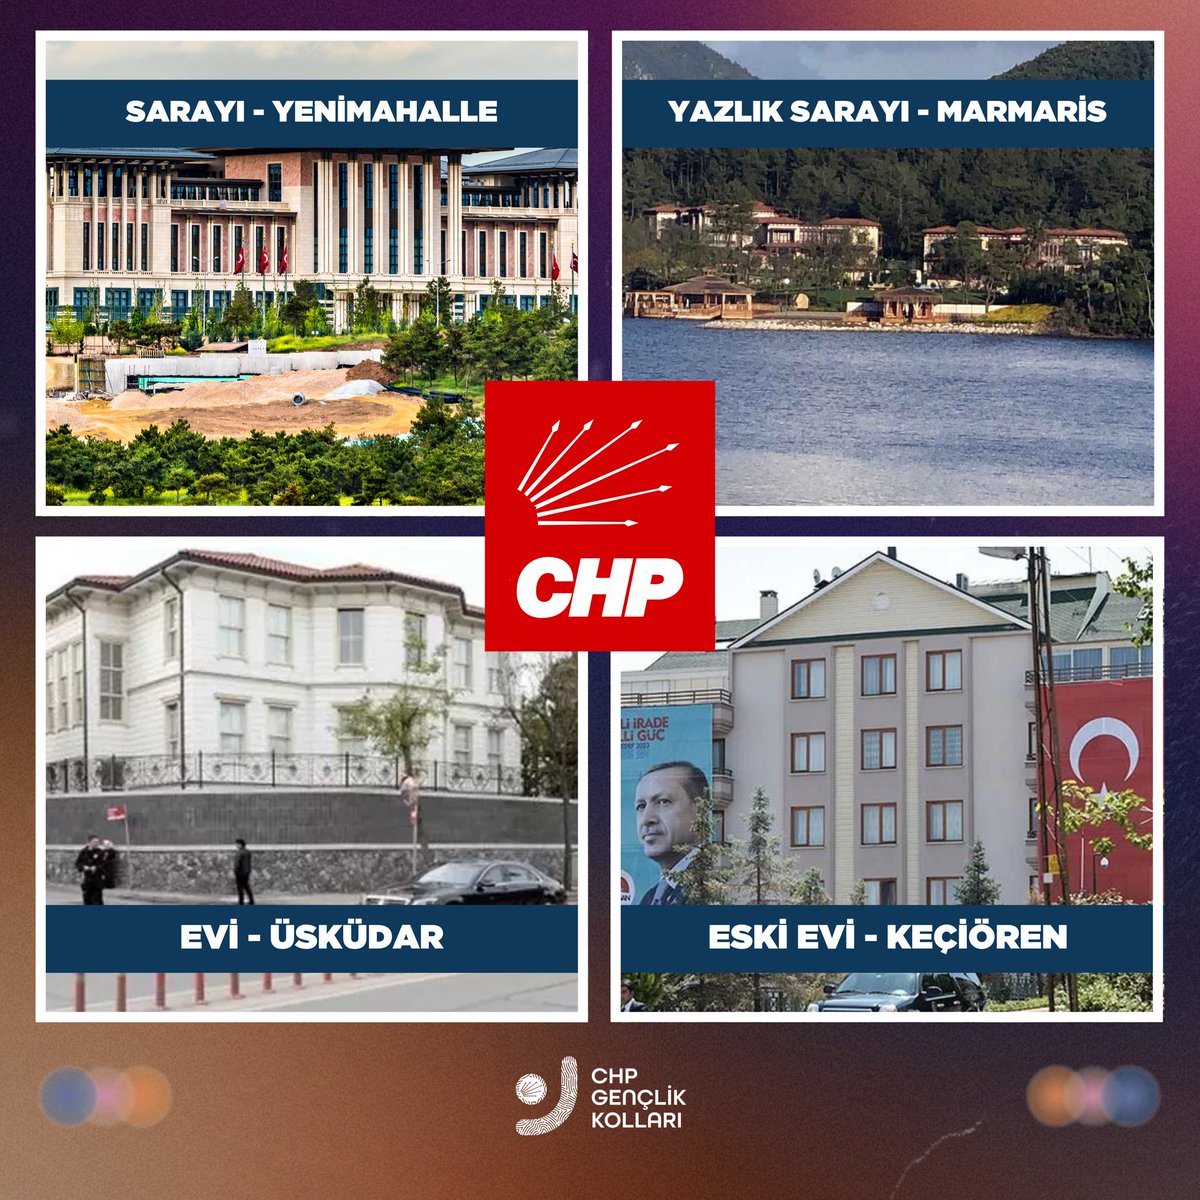 O da en iyisini biliyor, daha güzel bir hayat için CHP’nin yönettiği belediyeleri tercih ediyor. #TürkiyeninTercihiCHP